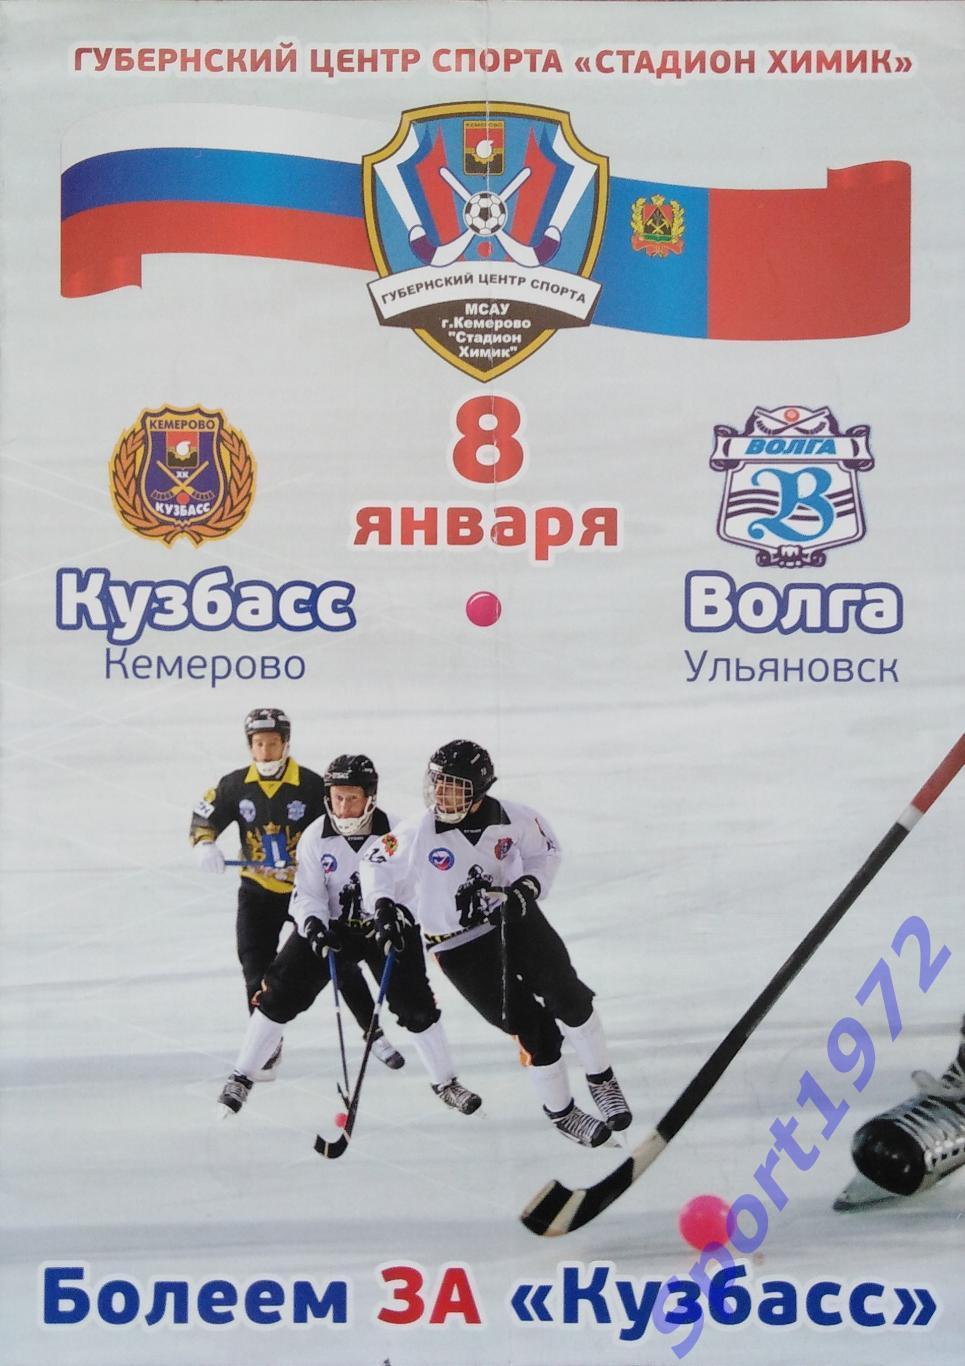 Кузбасс Кемерово - Волга Ульяновск - 08.01.2014.